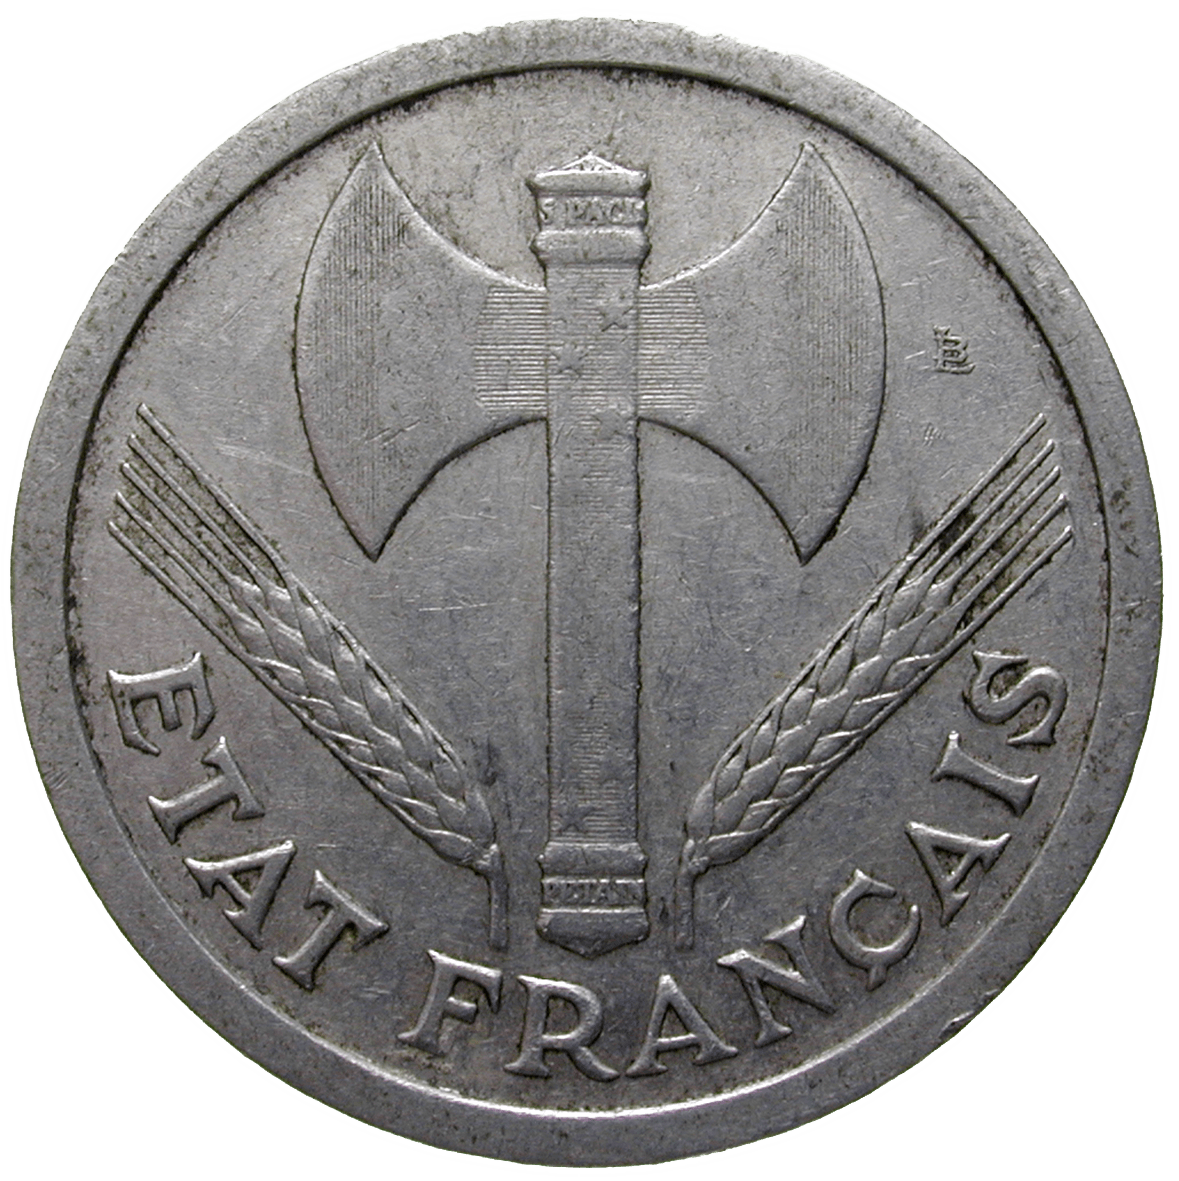 France, Etat Français, Philippe Pétain, 2 Francs 1943 (obverse)